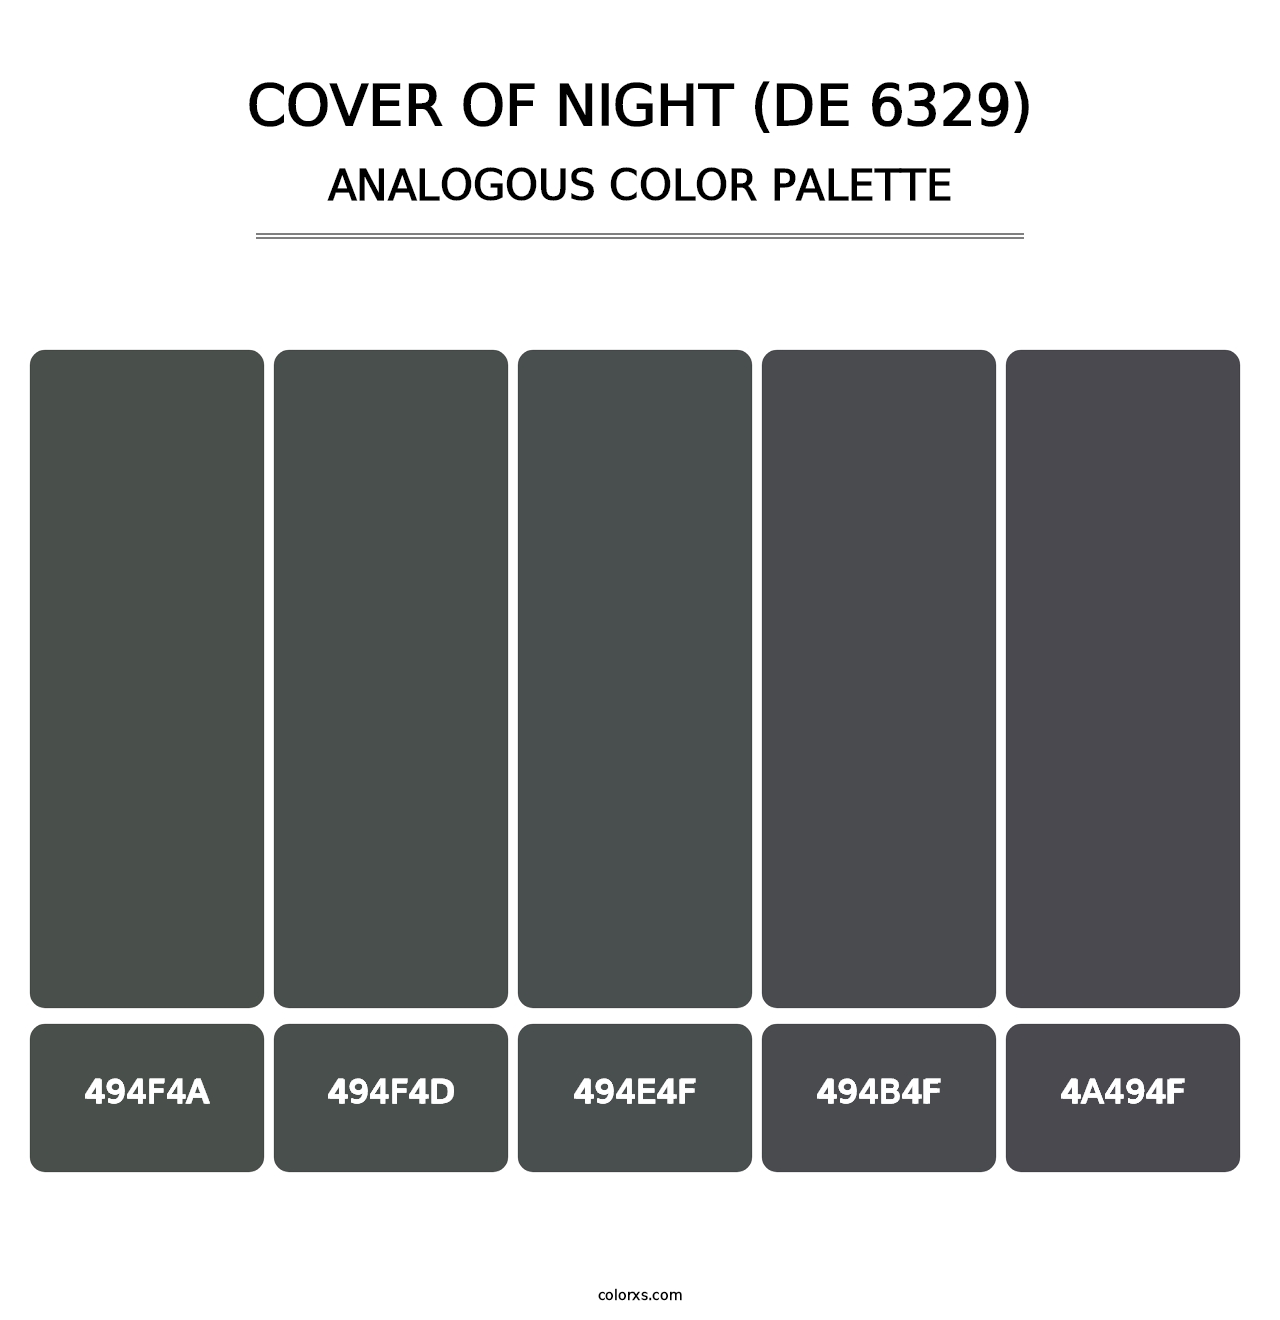 Cover of Night (DE 6329) - Analogous Color Palette